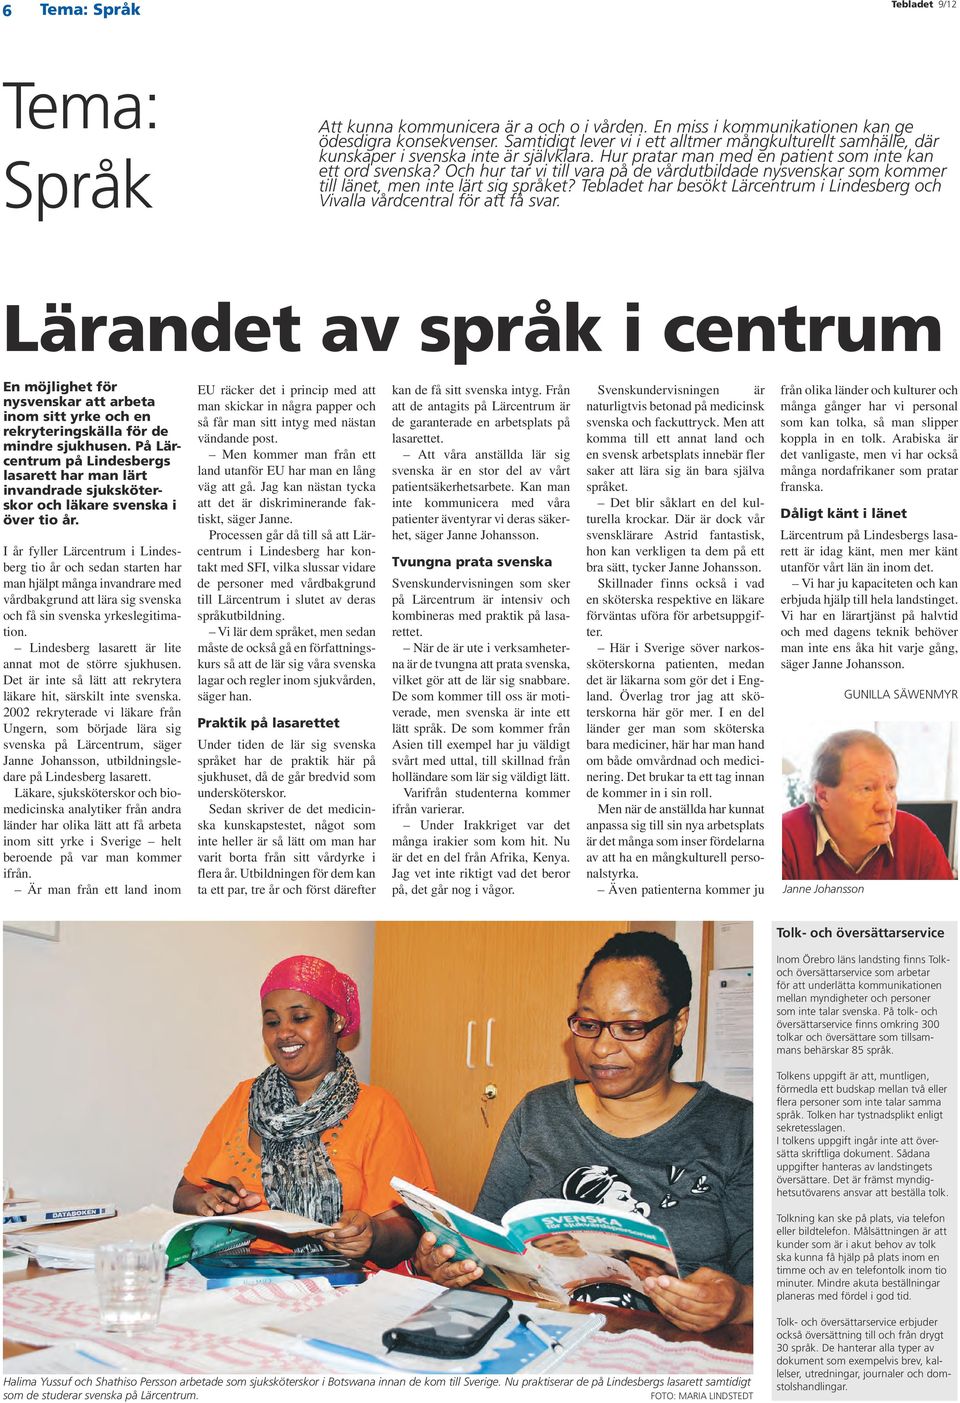 Och hur tar vi till vara på de vårdutbildade nysvenskar som kommer till länet, men inte lärt sig språket? Tebladet har besökt Lärcentrum i Lindesberg och Vivalla vårdcentral för att få svar.